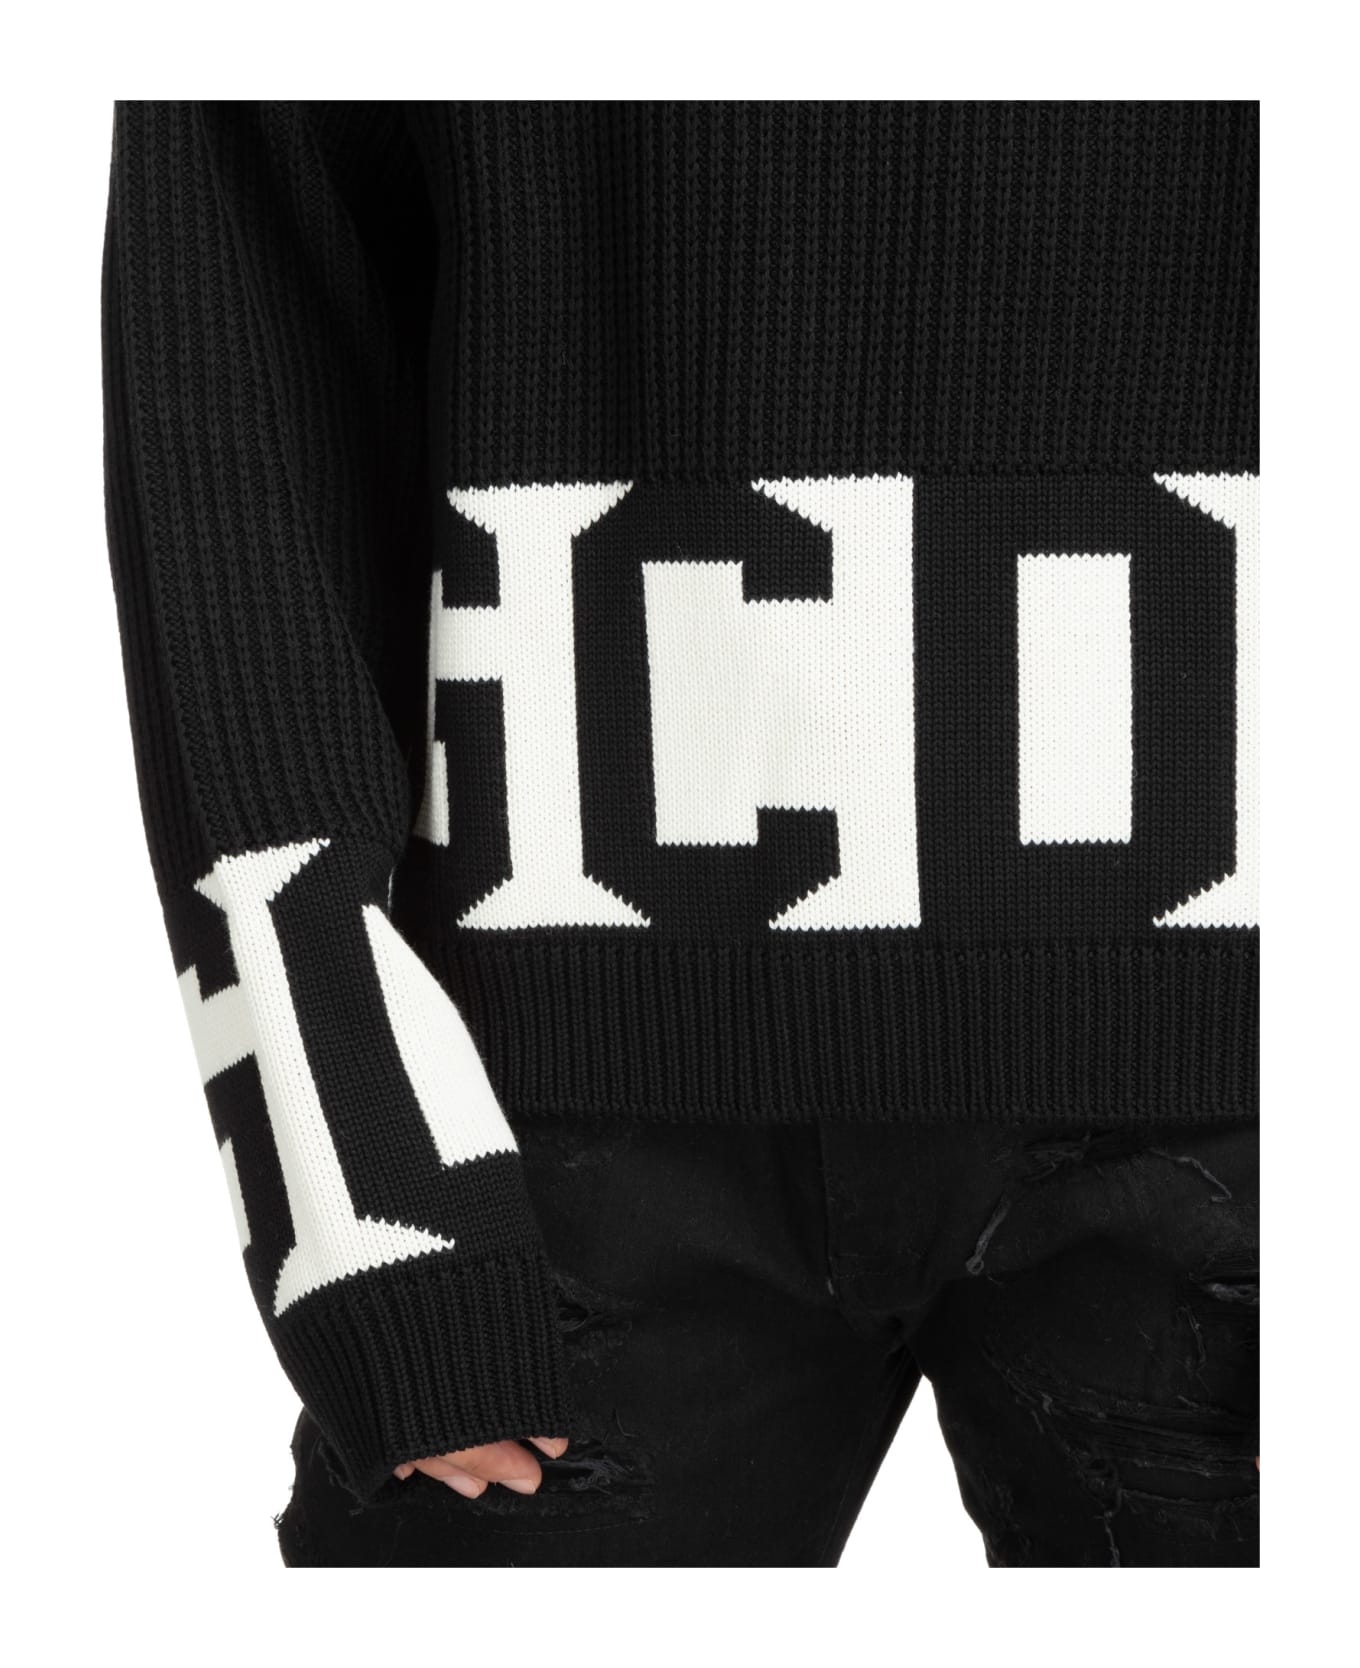 GCDS Wool Sweater - Black